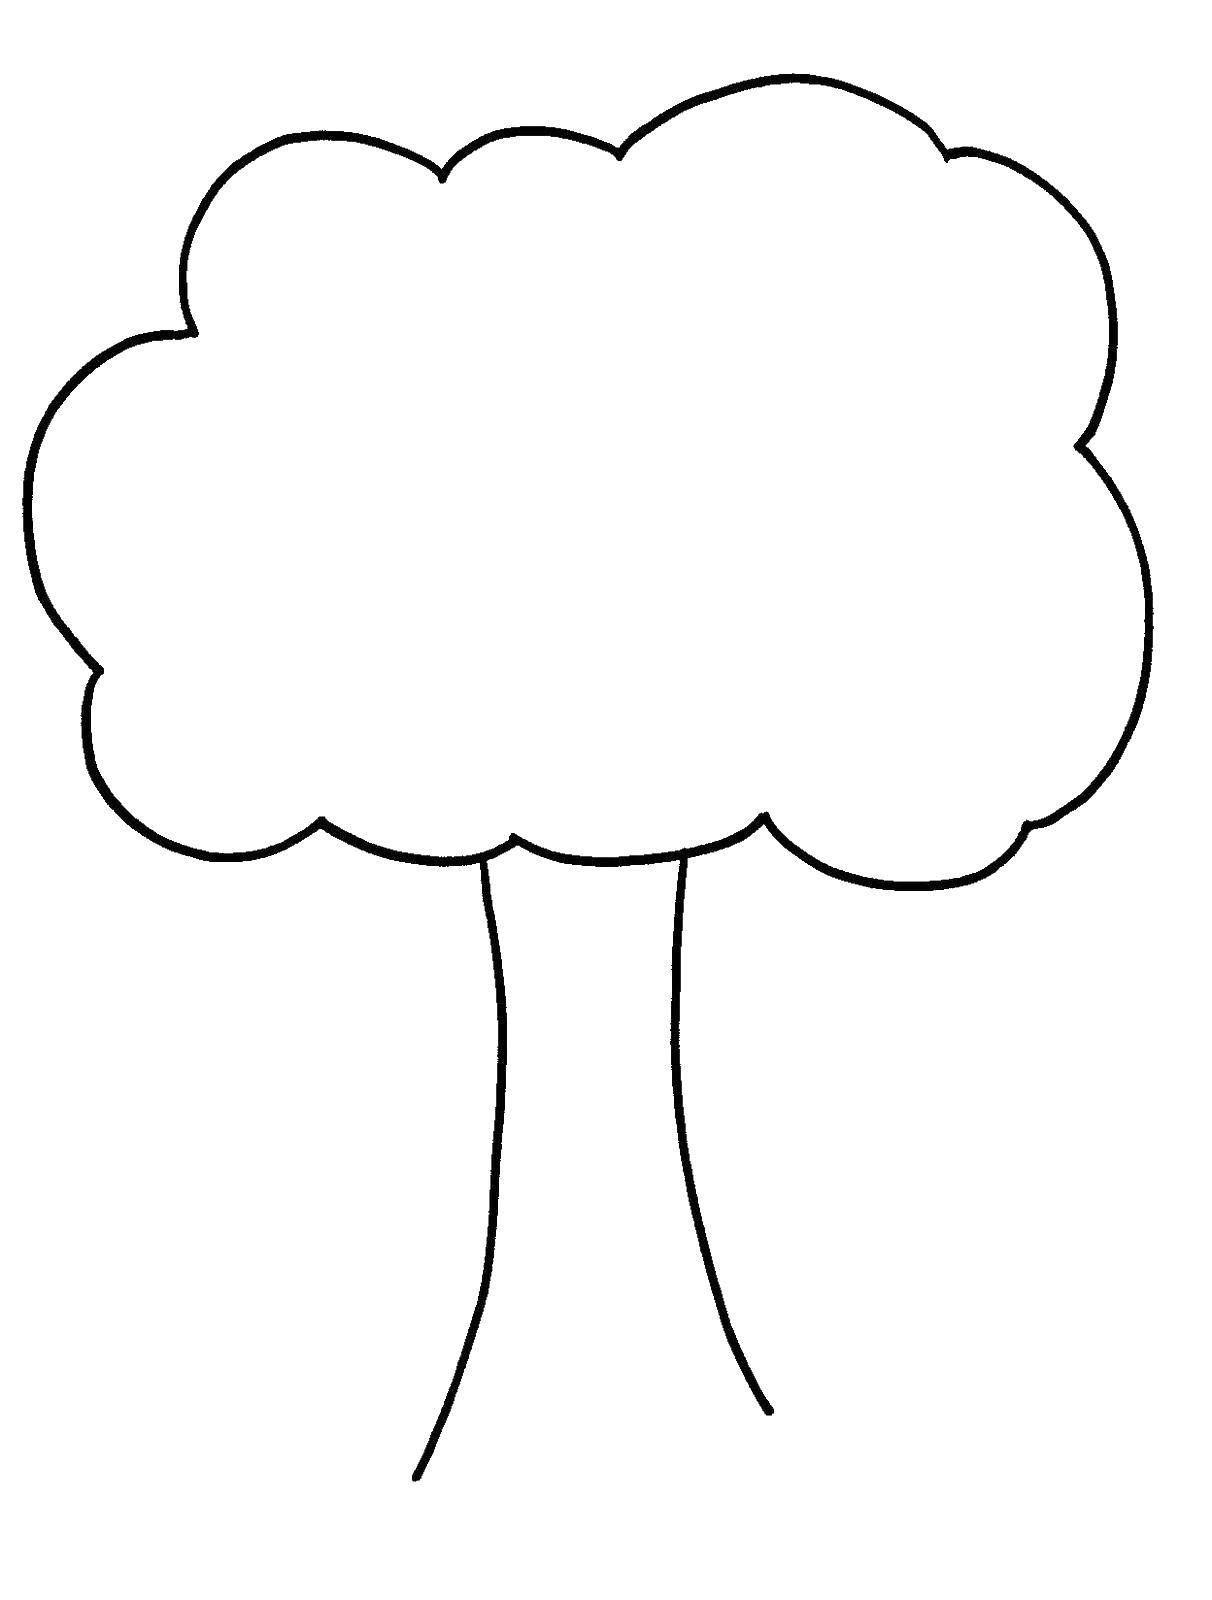 Розмальовки  Деревце. Завантажити розмальовку дерево, крона, листя.  Роздрукувати ,Сімейне дерево,